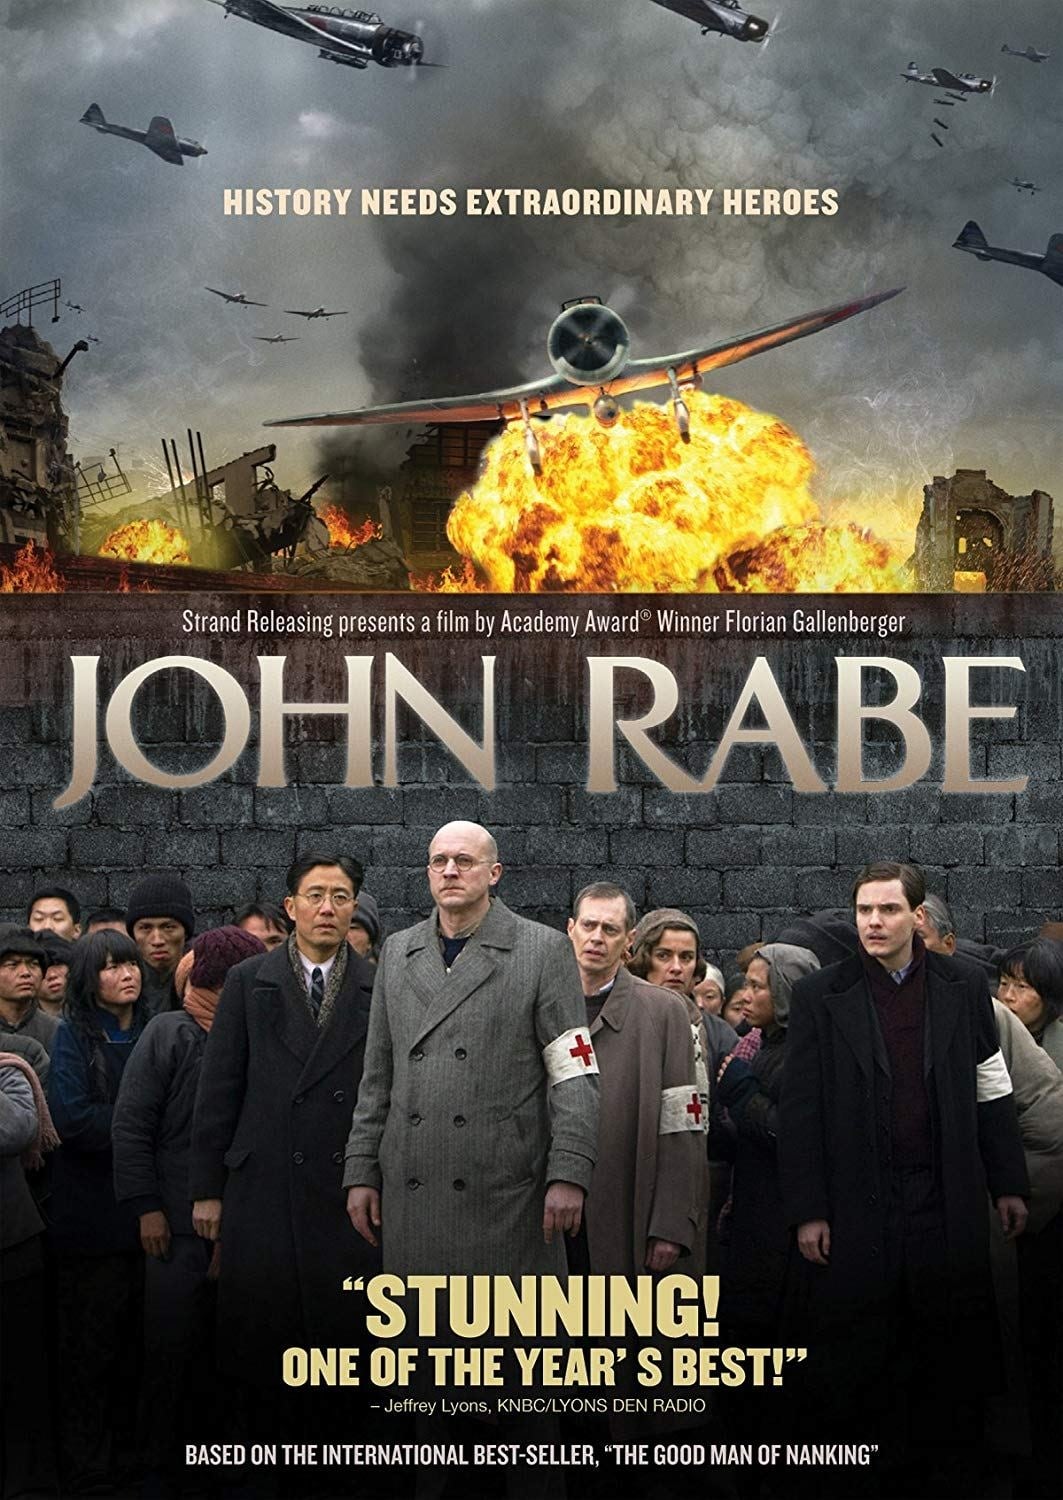 John Rabe (2009)